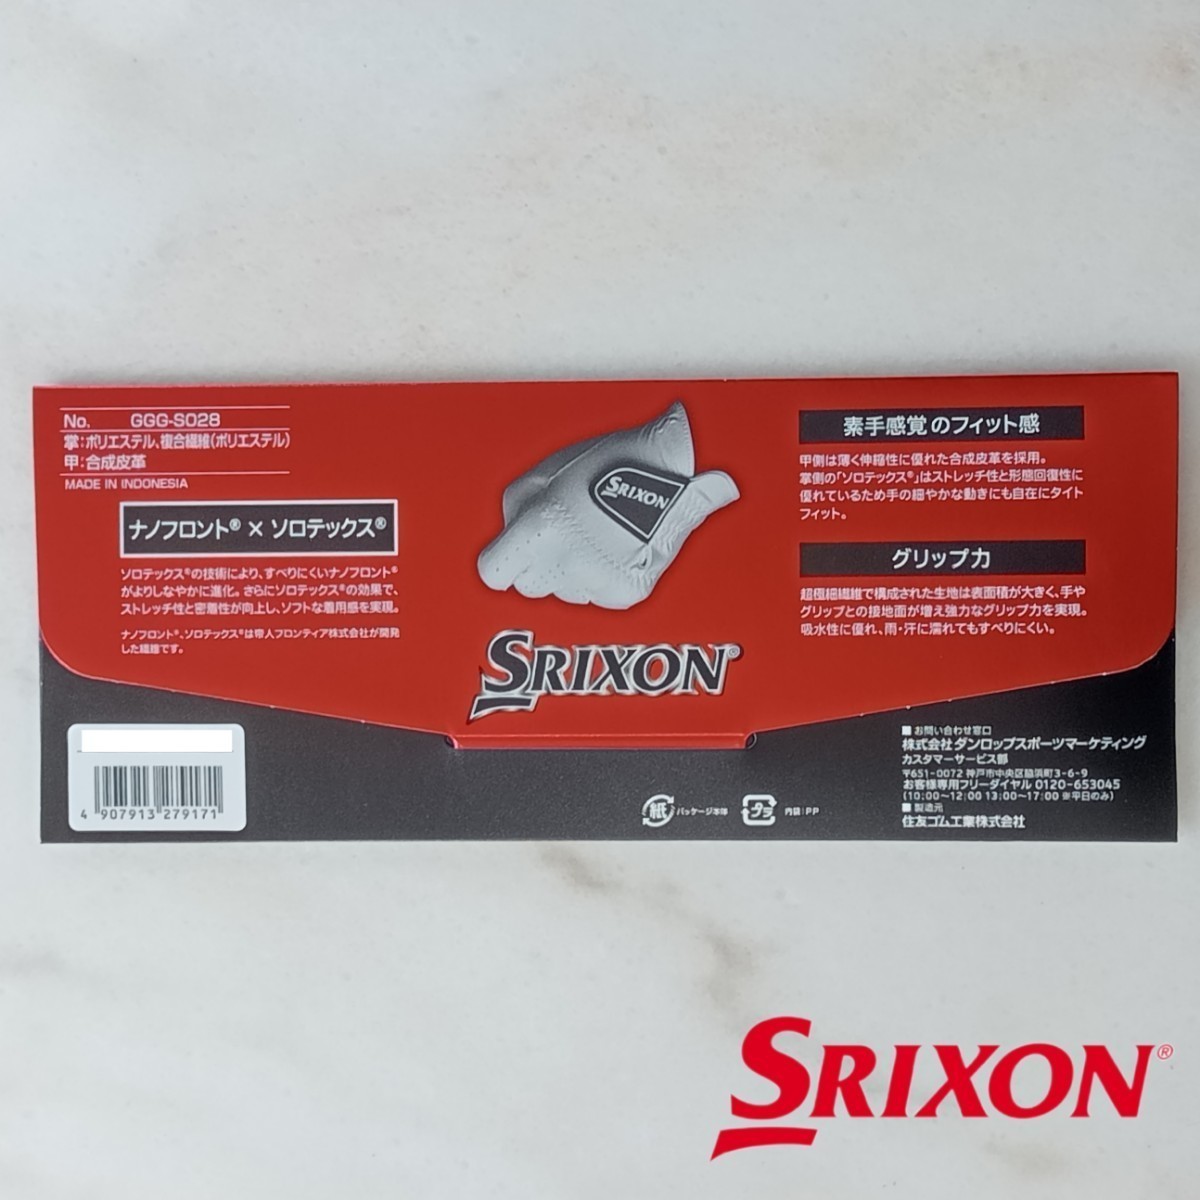 スリクソン 23cm 白 3枚セット GGG-S028 ダンロップ ゴルフグローブ 新品未使用品 ゴルフ用品 SRIXON PRO SERIES 薄手 ホワイト グローブ